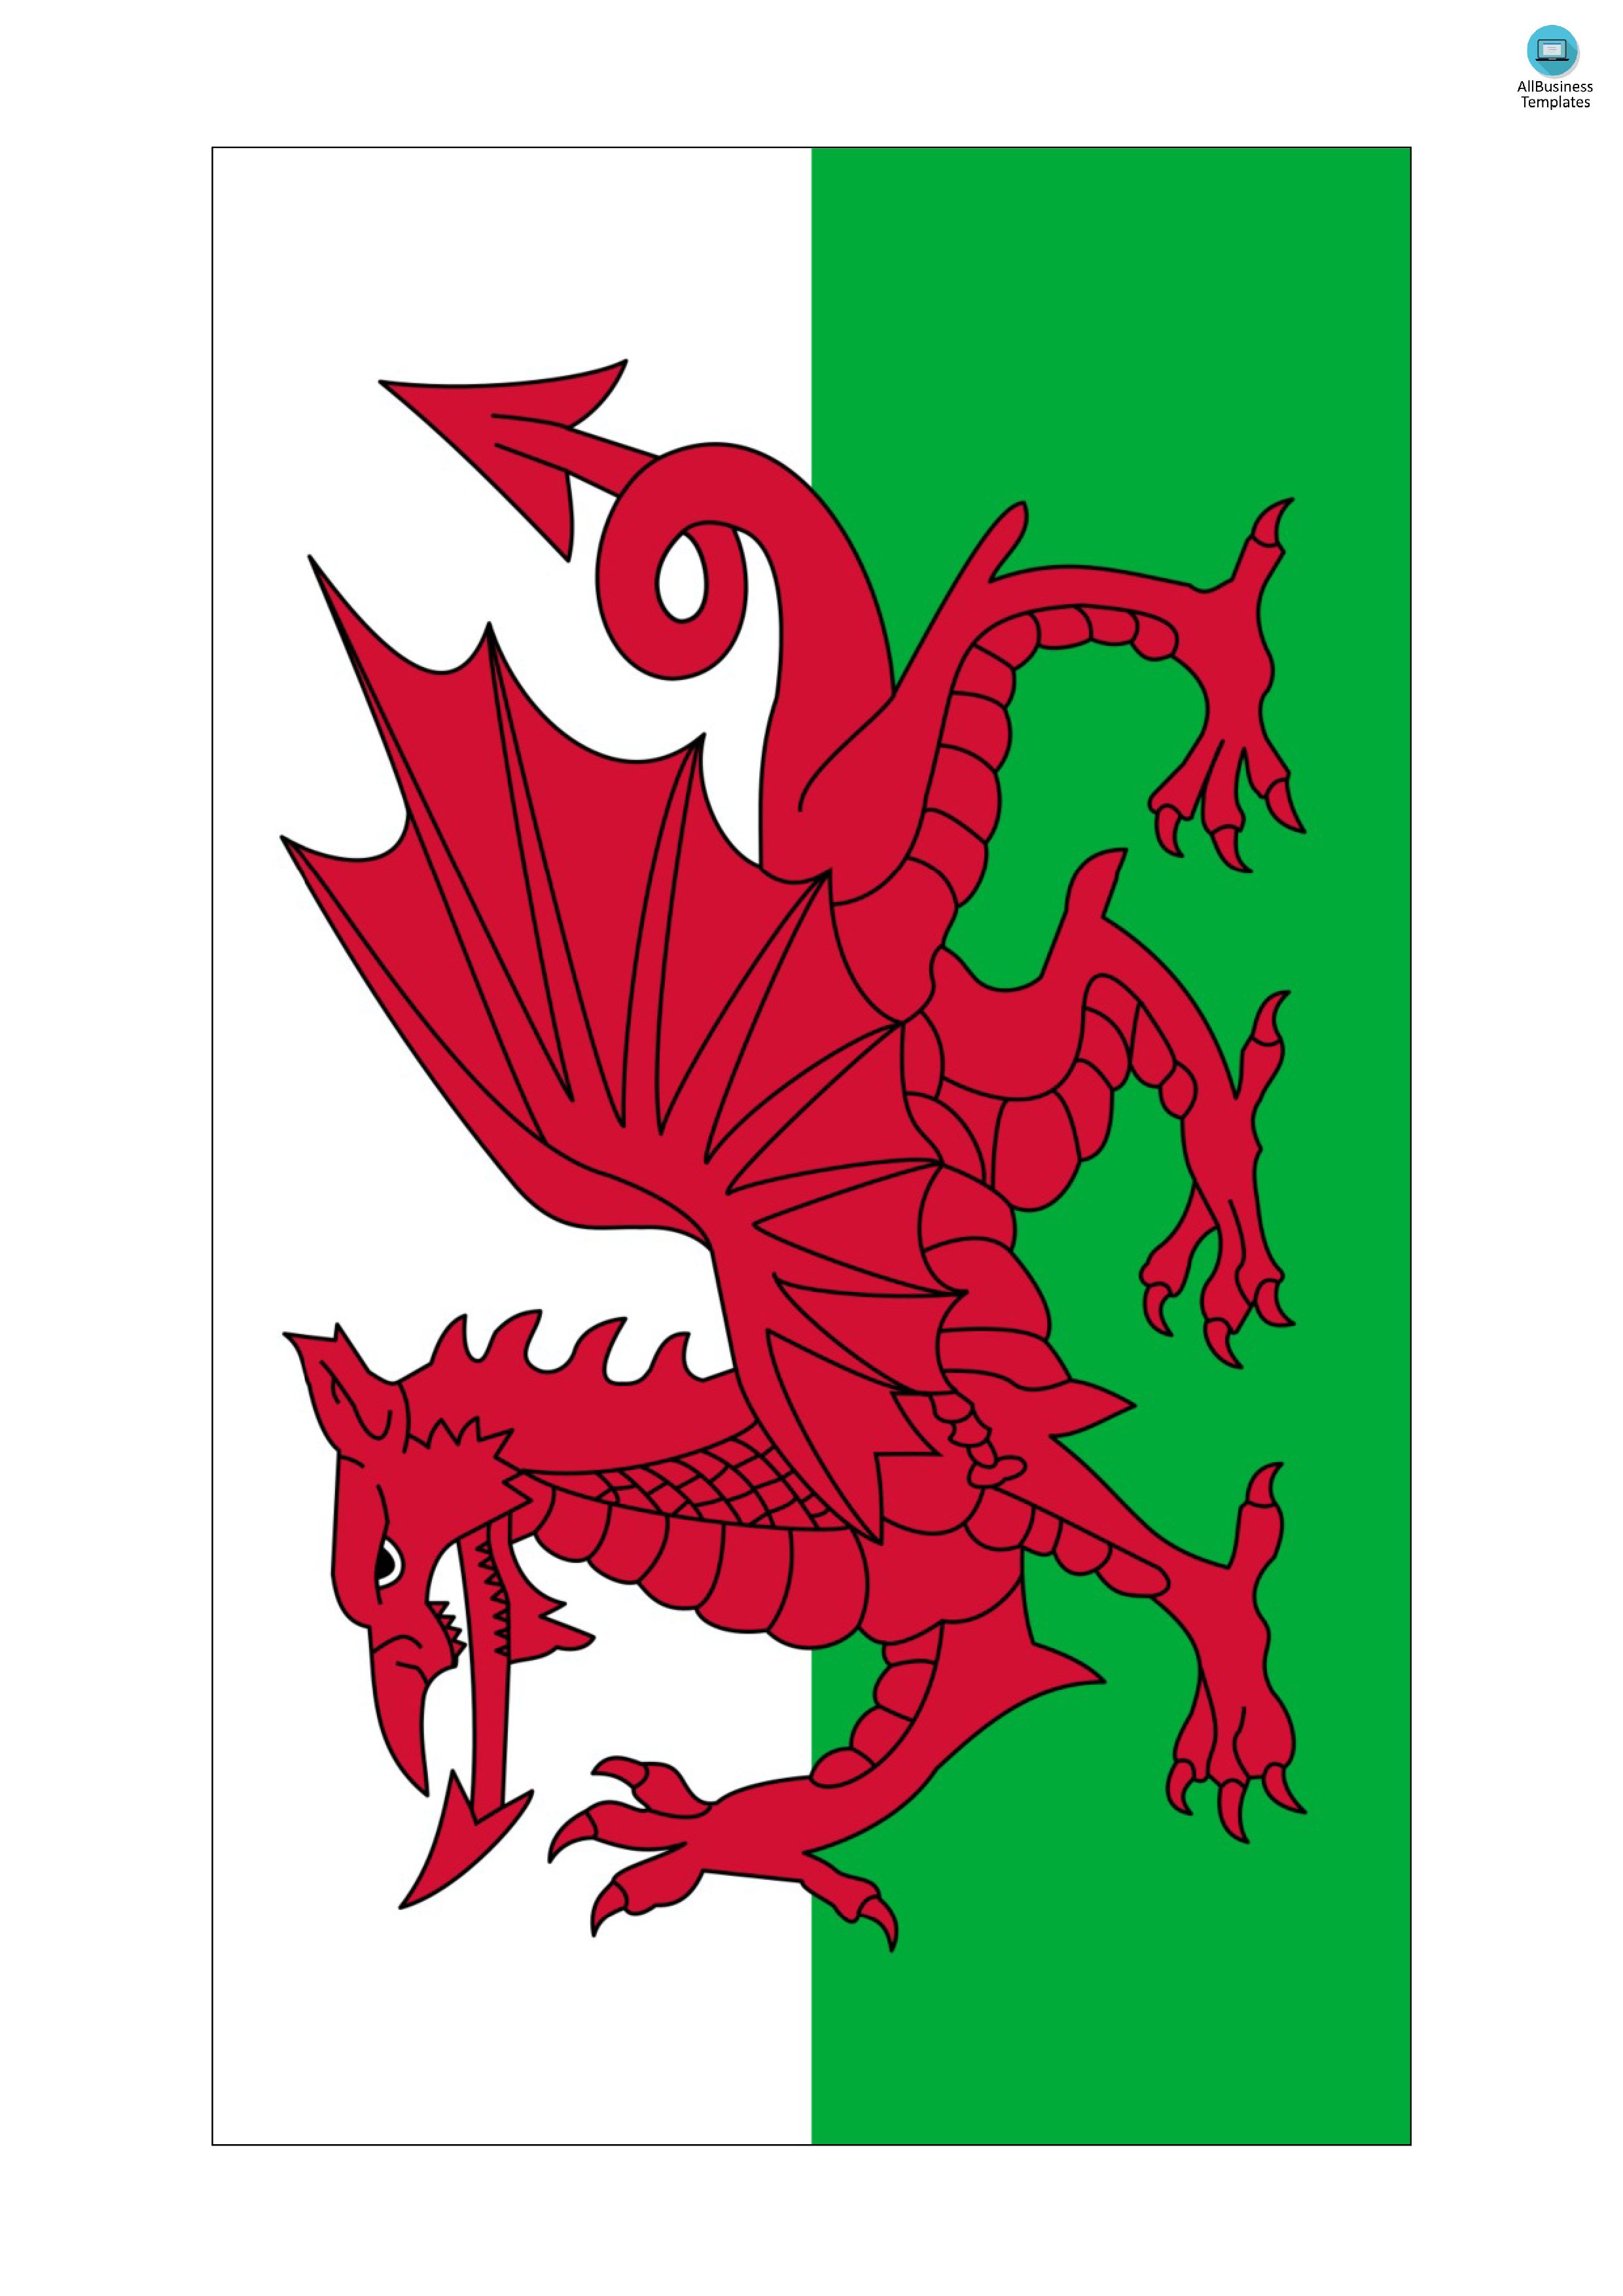 Wales Flag main image